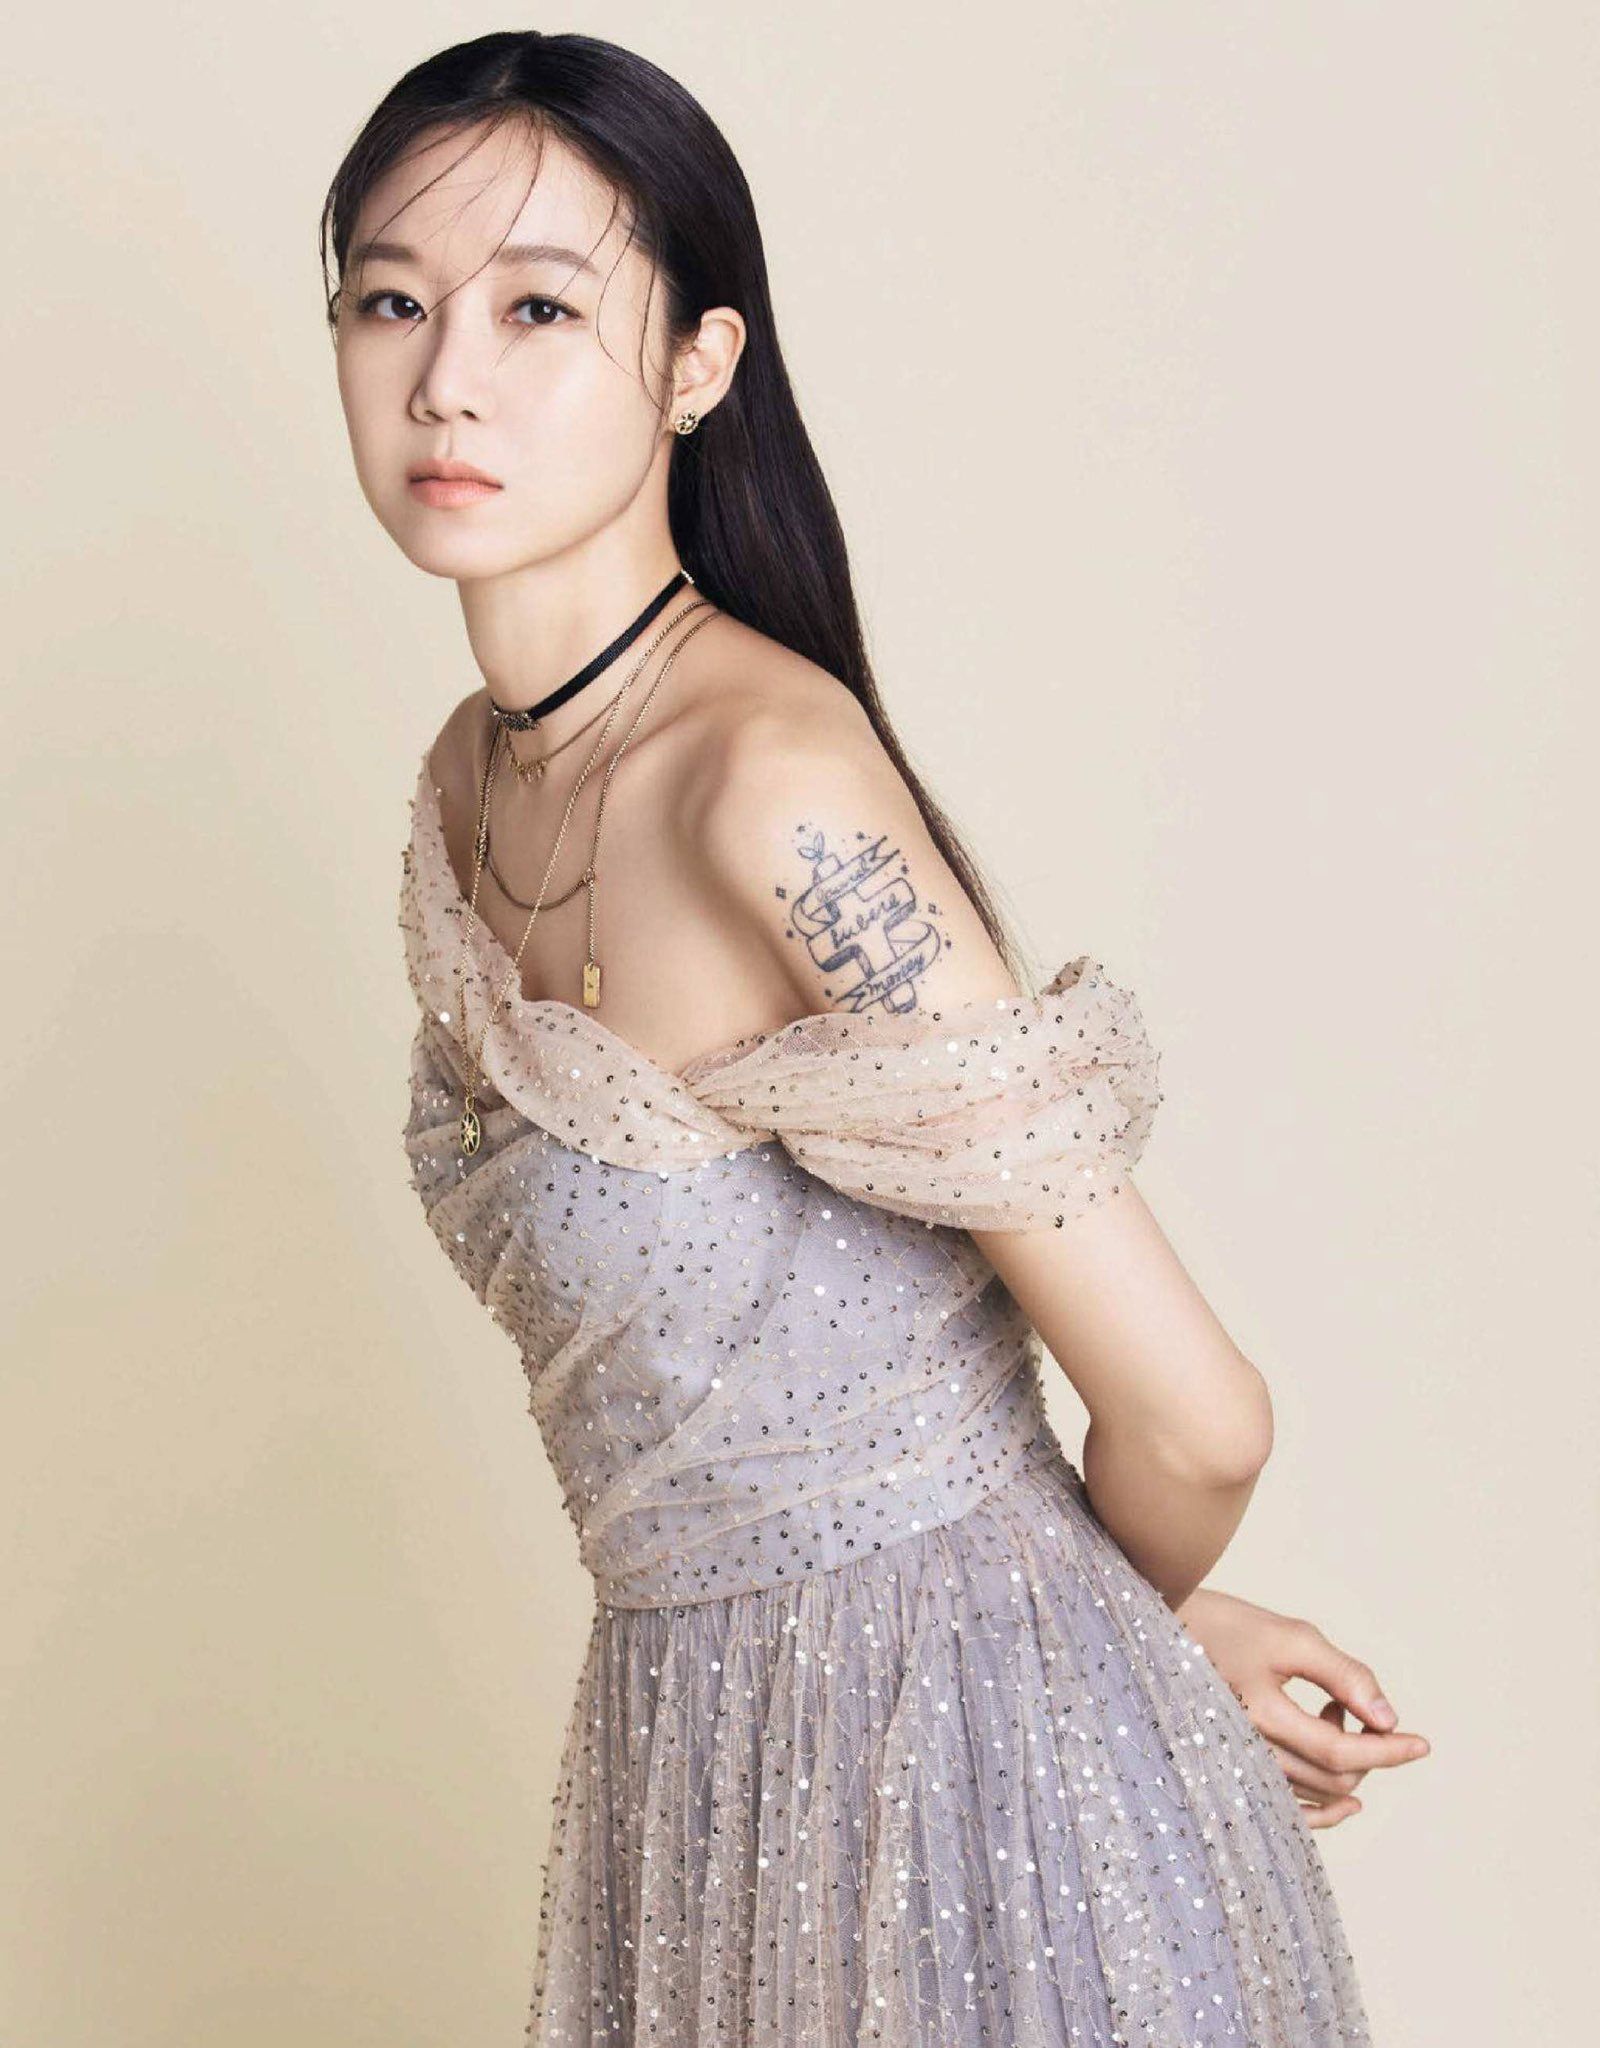 Gong Hyo Jin - phù dâu may mắn: Ngoài 40 tuổi vẫn cực trẻ đẹp nhờ skinkcare bằng 1 chiếc thìa - Ảnh 4.